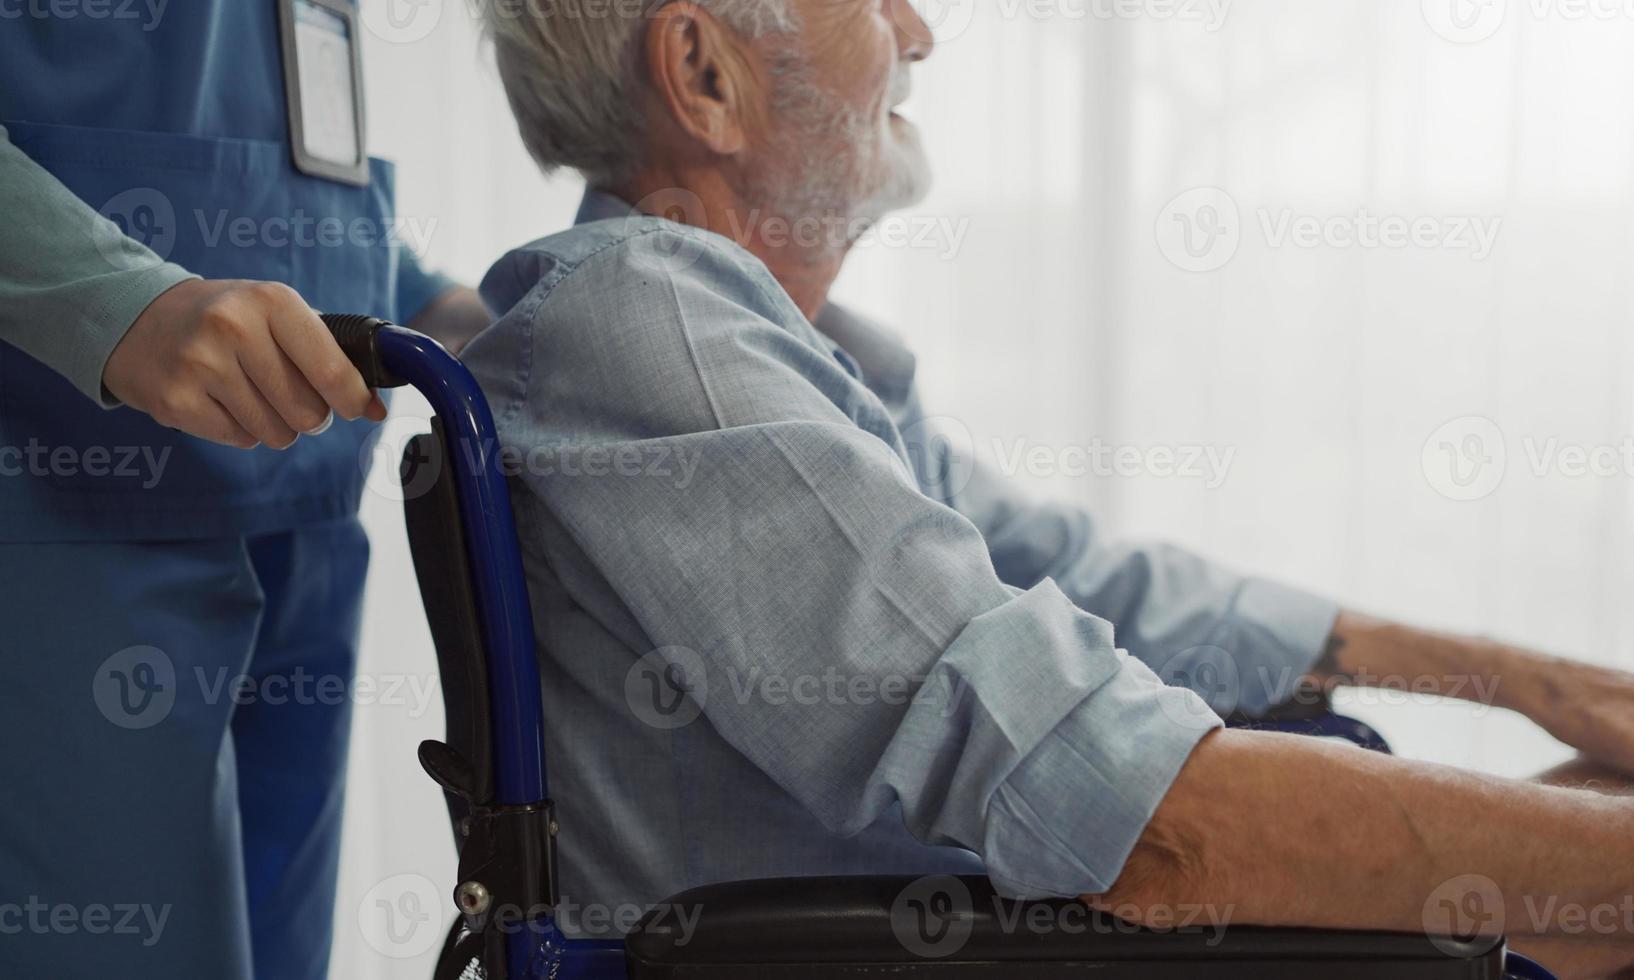 verpleegster die rolstoel met senior man raam zet. ongelukkige senior man met geriatrische of depressieve ziekte. therapeut zorgzaam, ondersteunend en empathisch. foto